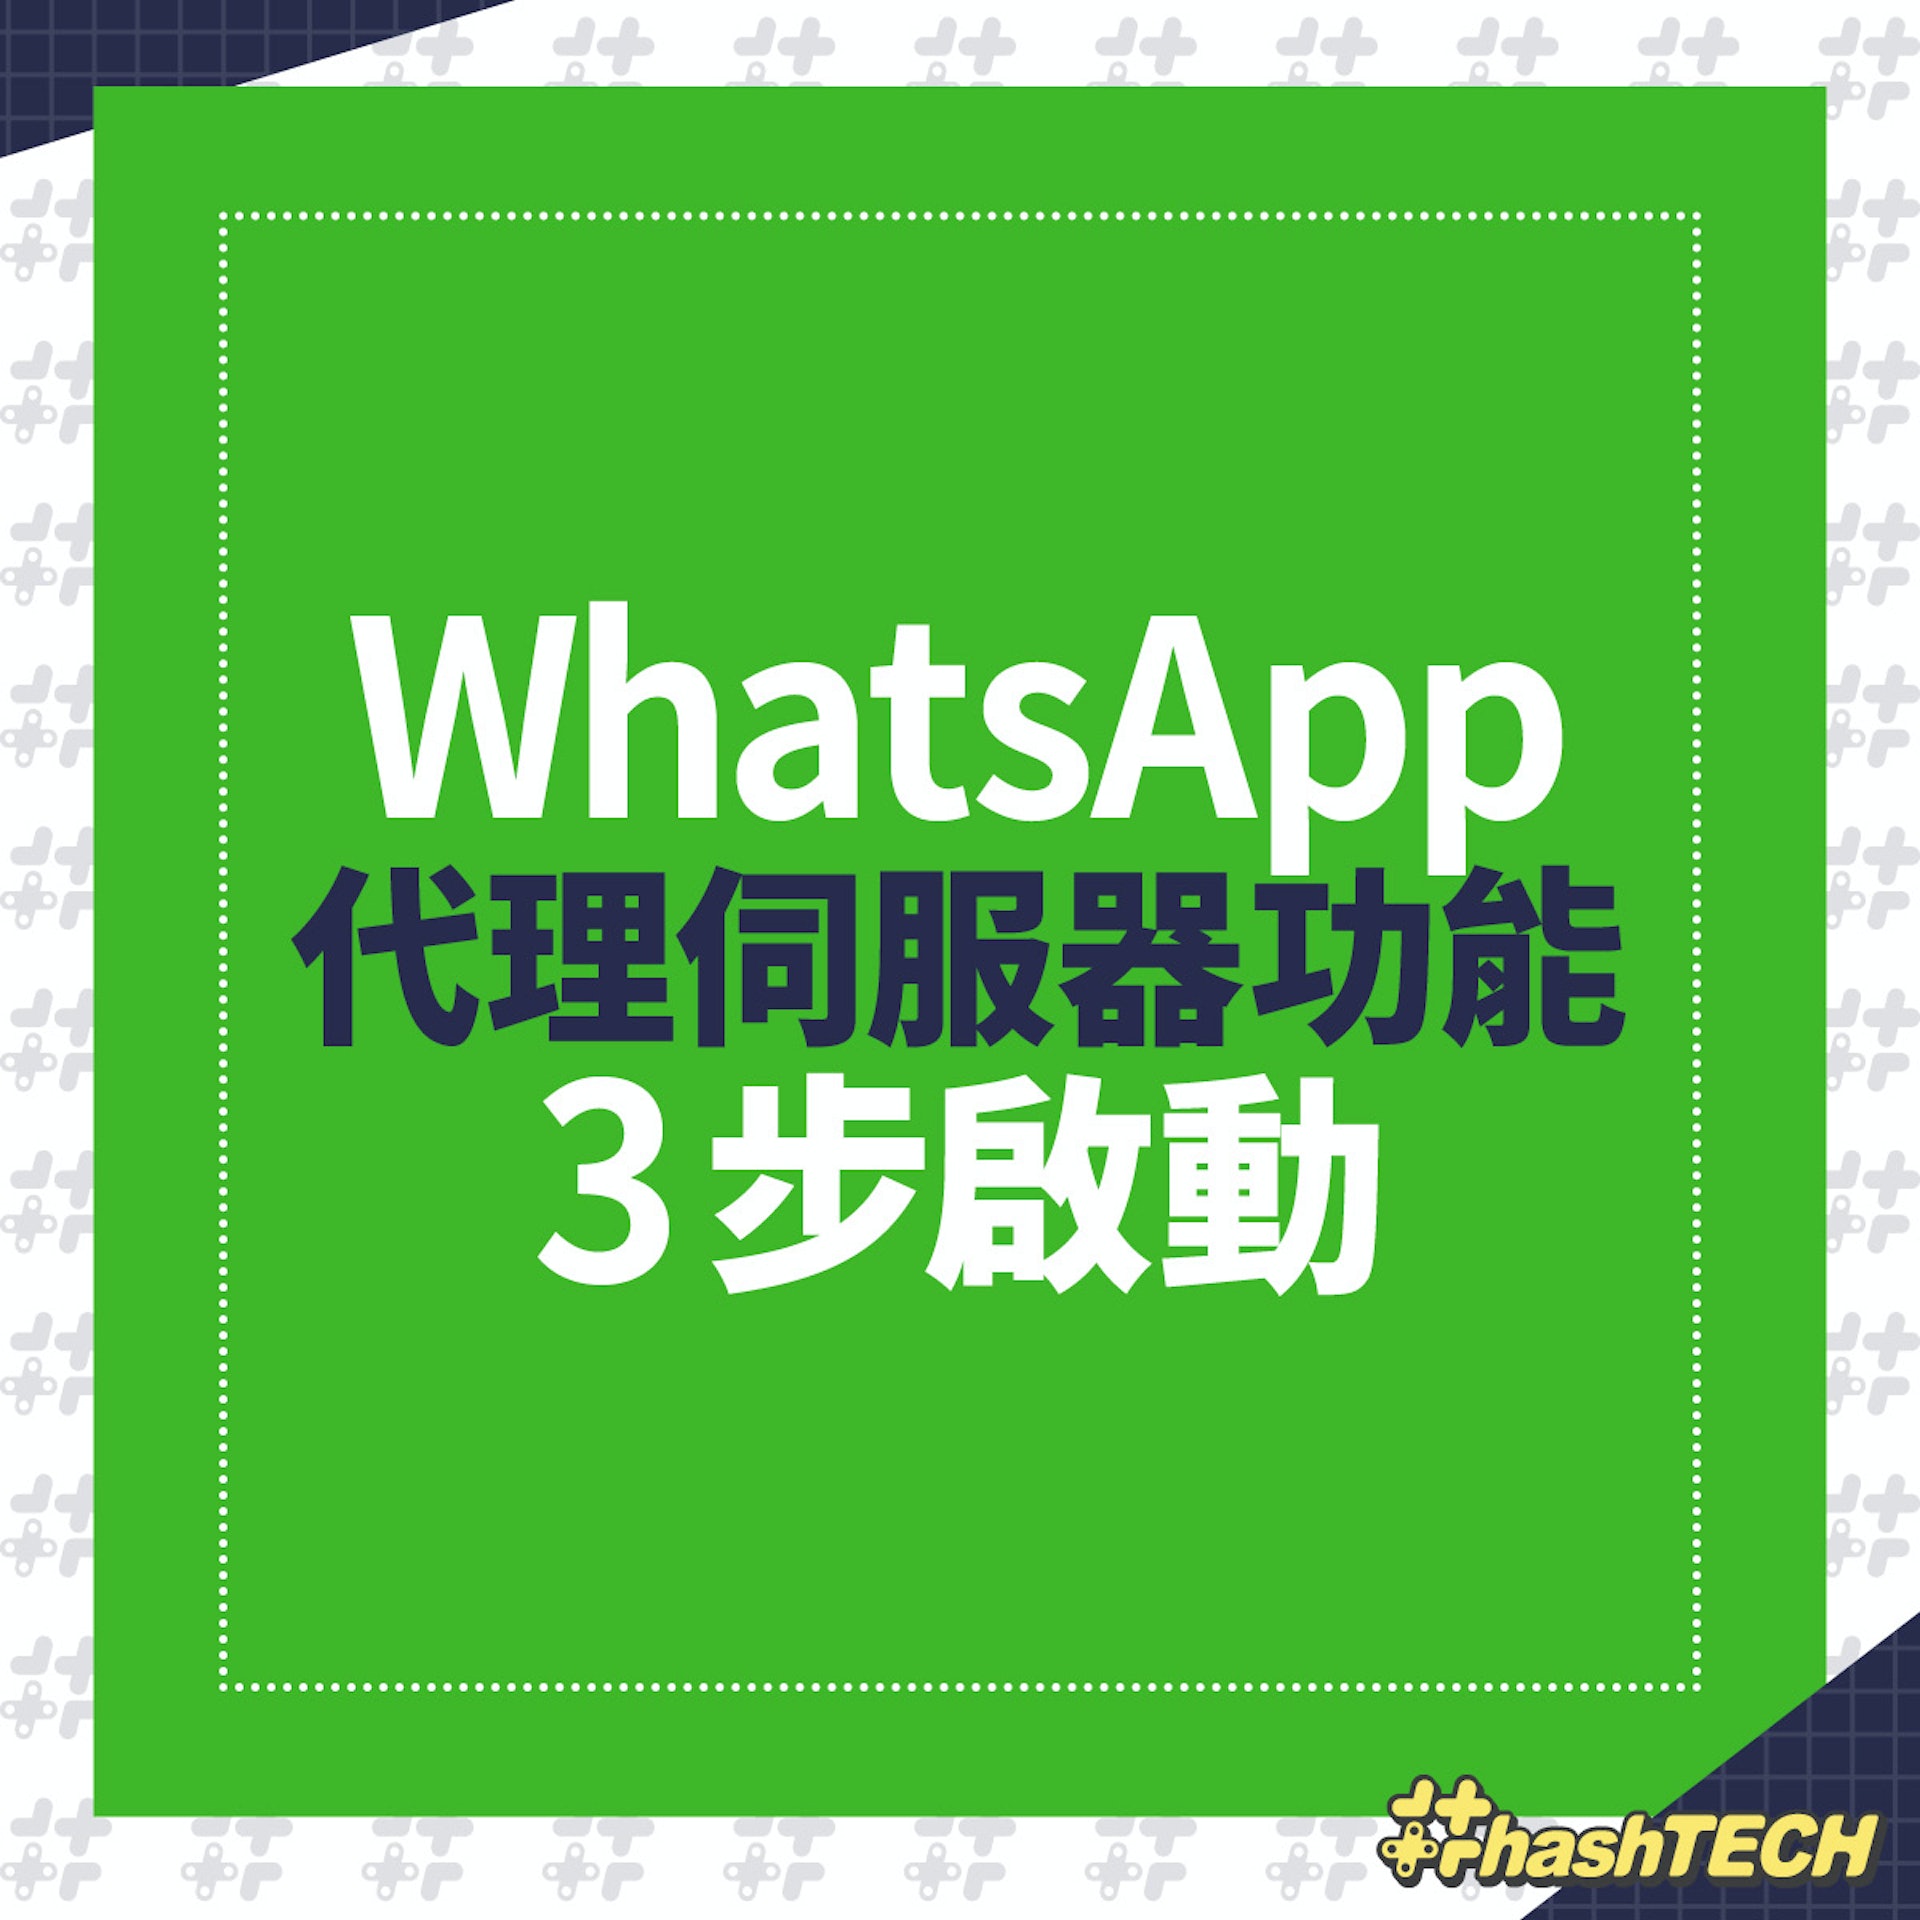 WhatsApp 代理伺服器功能 3 步可啟動